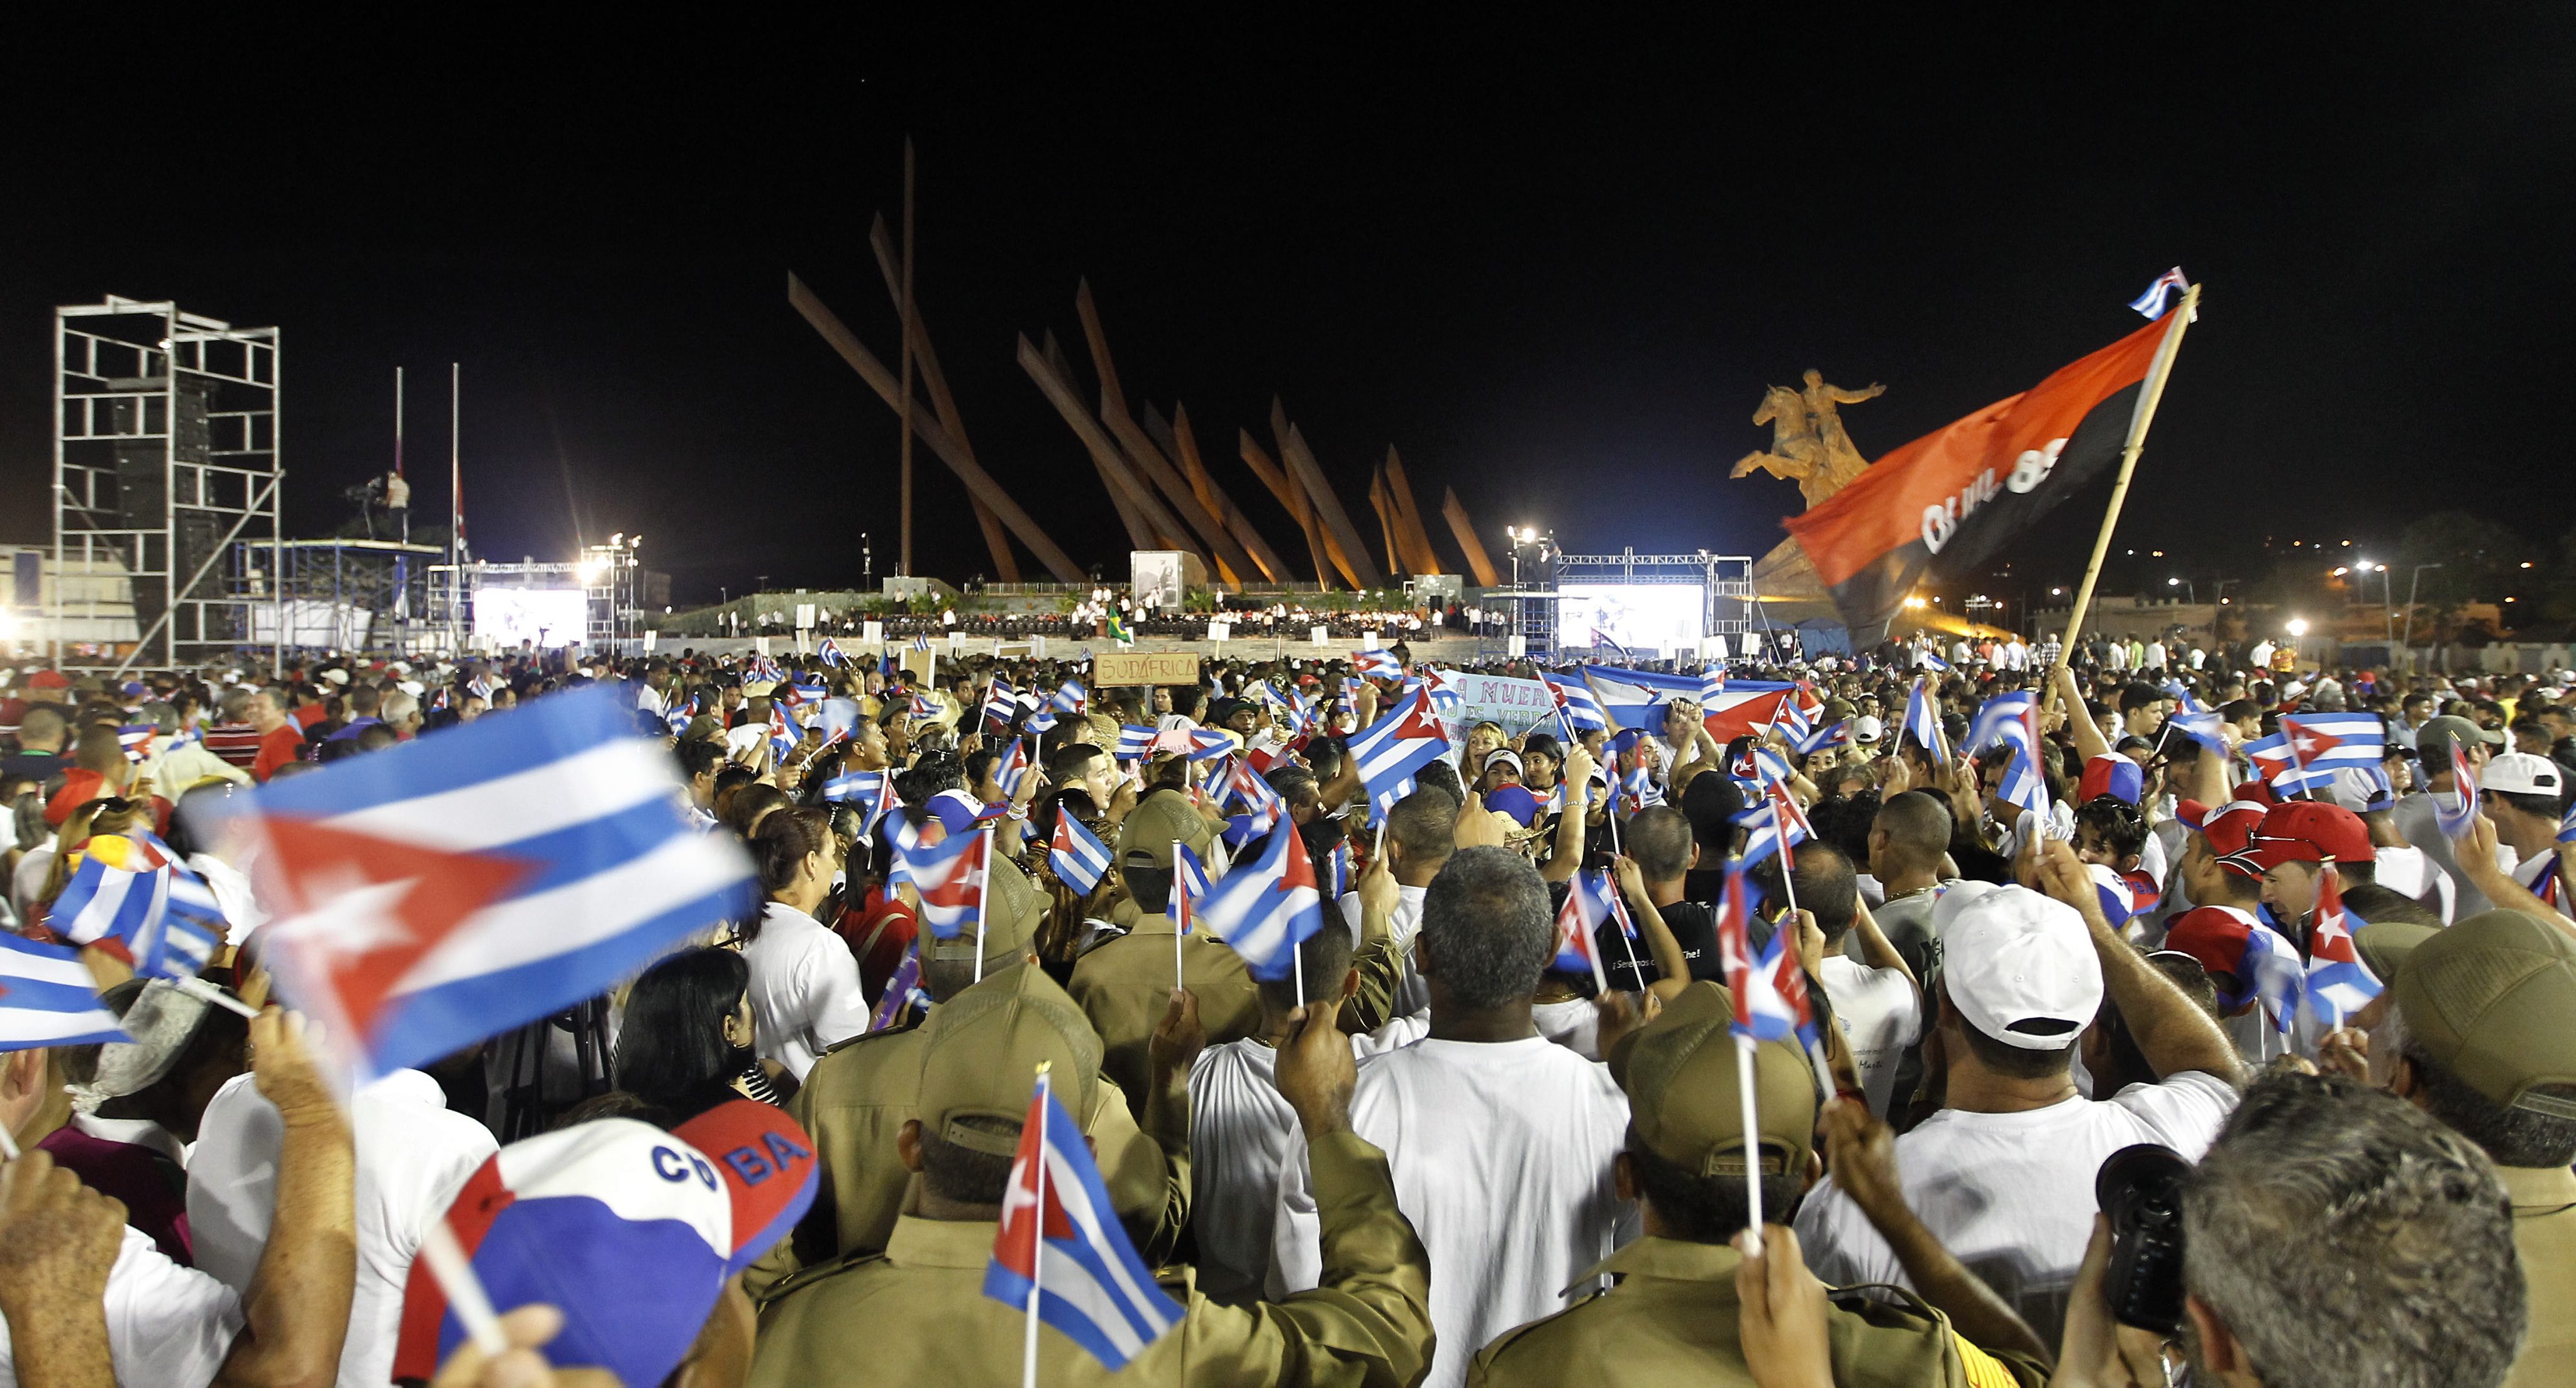 Близо половин милион кубинци се събраха на главния площад в гр. Сантяго де Куба, за да се простят с Фидел Кастро. Траурната церемония водеше лидерът и брат на покойния Раул Кастро, който се закле да пази революцията след Фидел. За да отдадат почит към бащата на кубинската революция, пристигнаха редица лидери от Латинска Америка - венецуелският президент Николас Мадуро, никарагуанският Даниел Ортега, боливийският Ево Моралес и двамата бивши бразилски президенти Лула да Силва и Дилма Русеф.